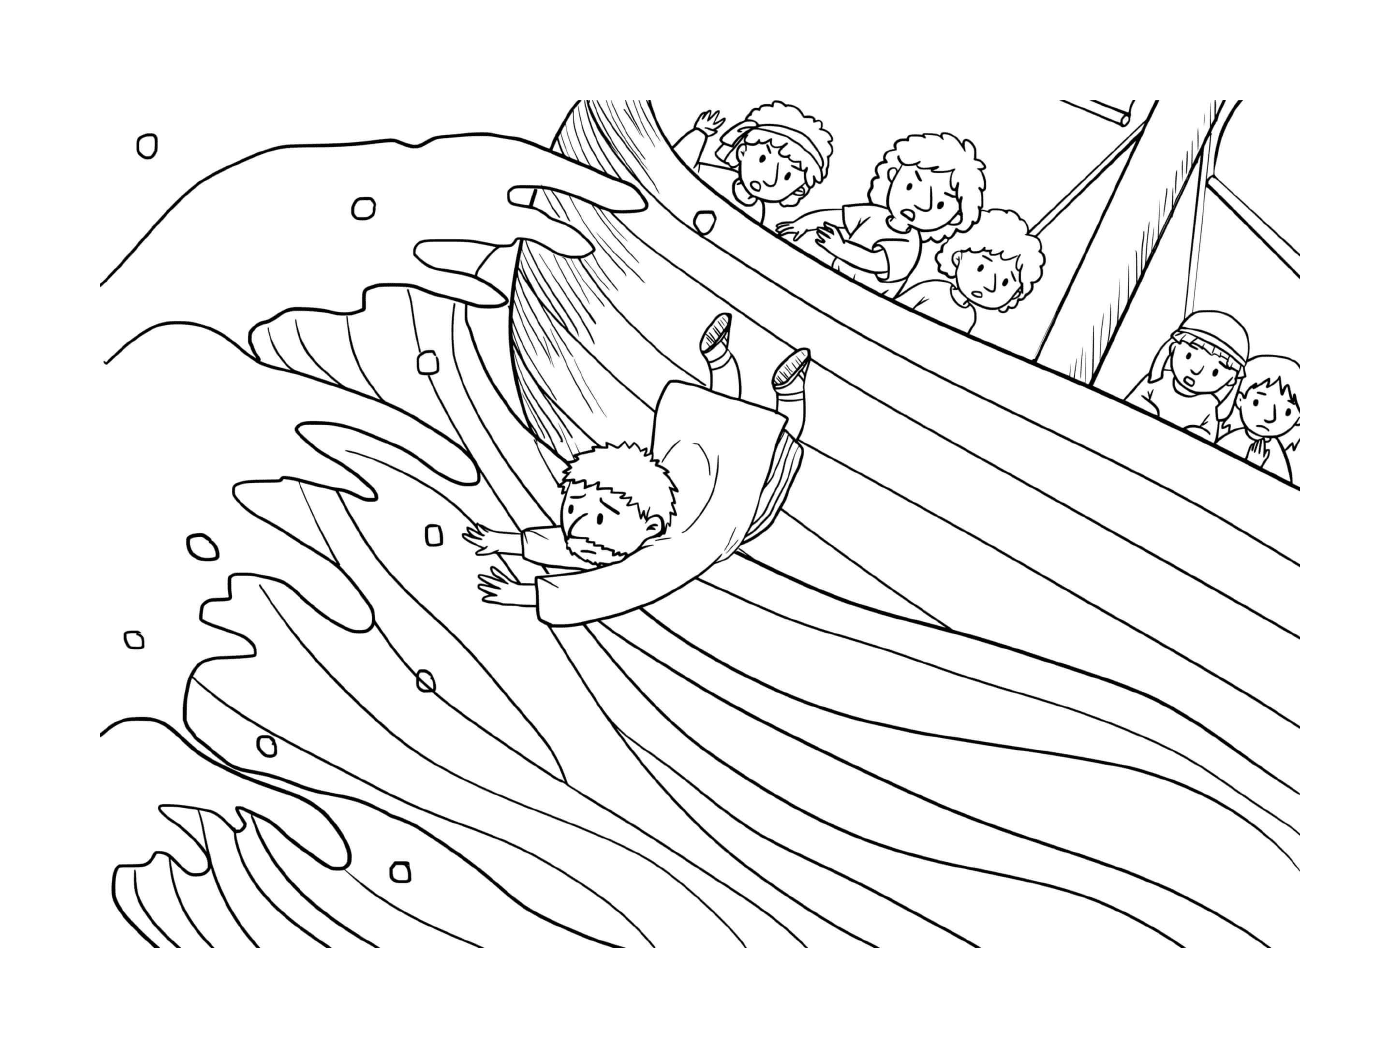  Un hombre cayendo de un barco 